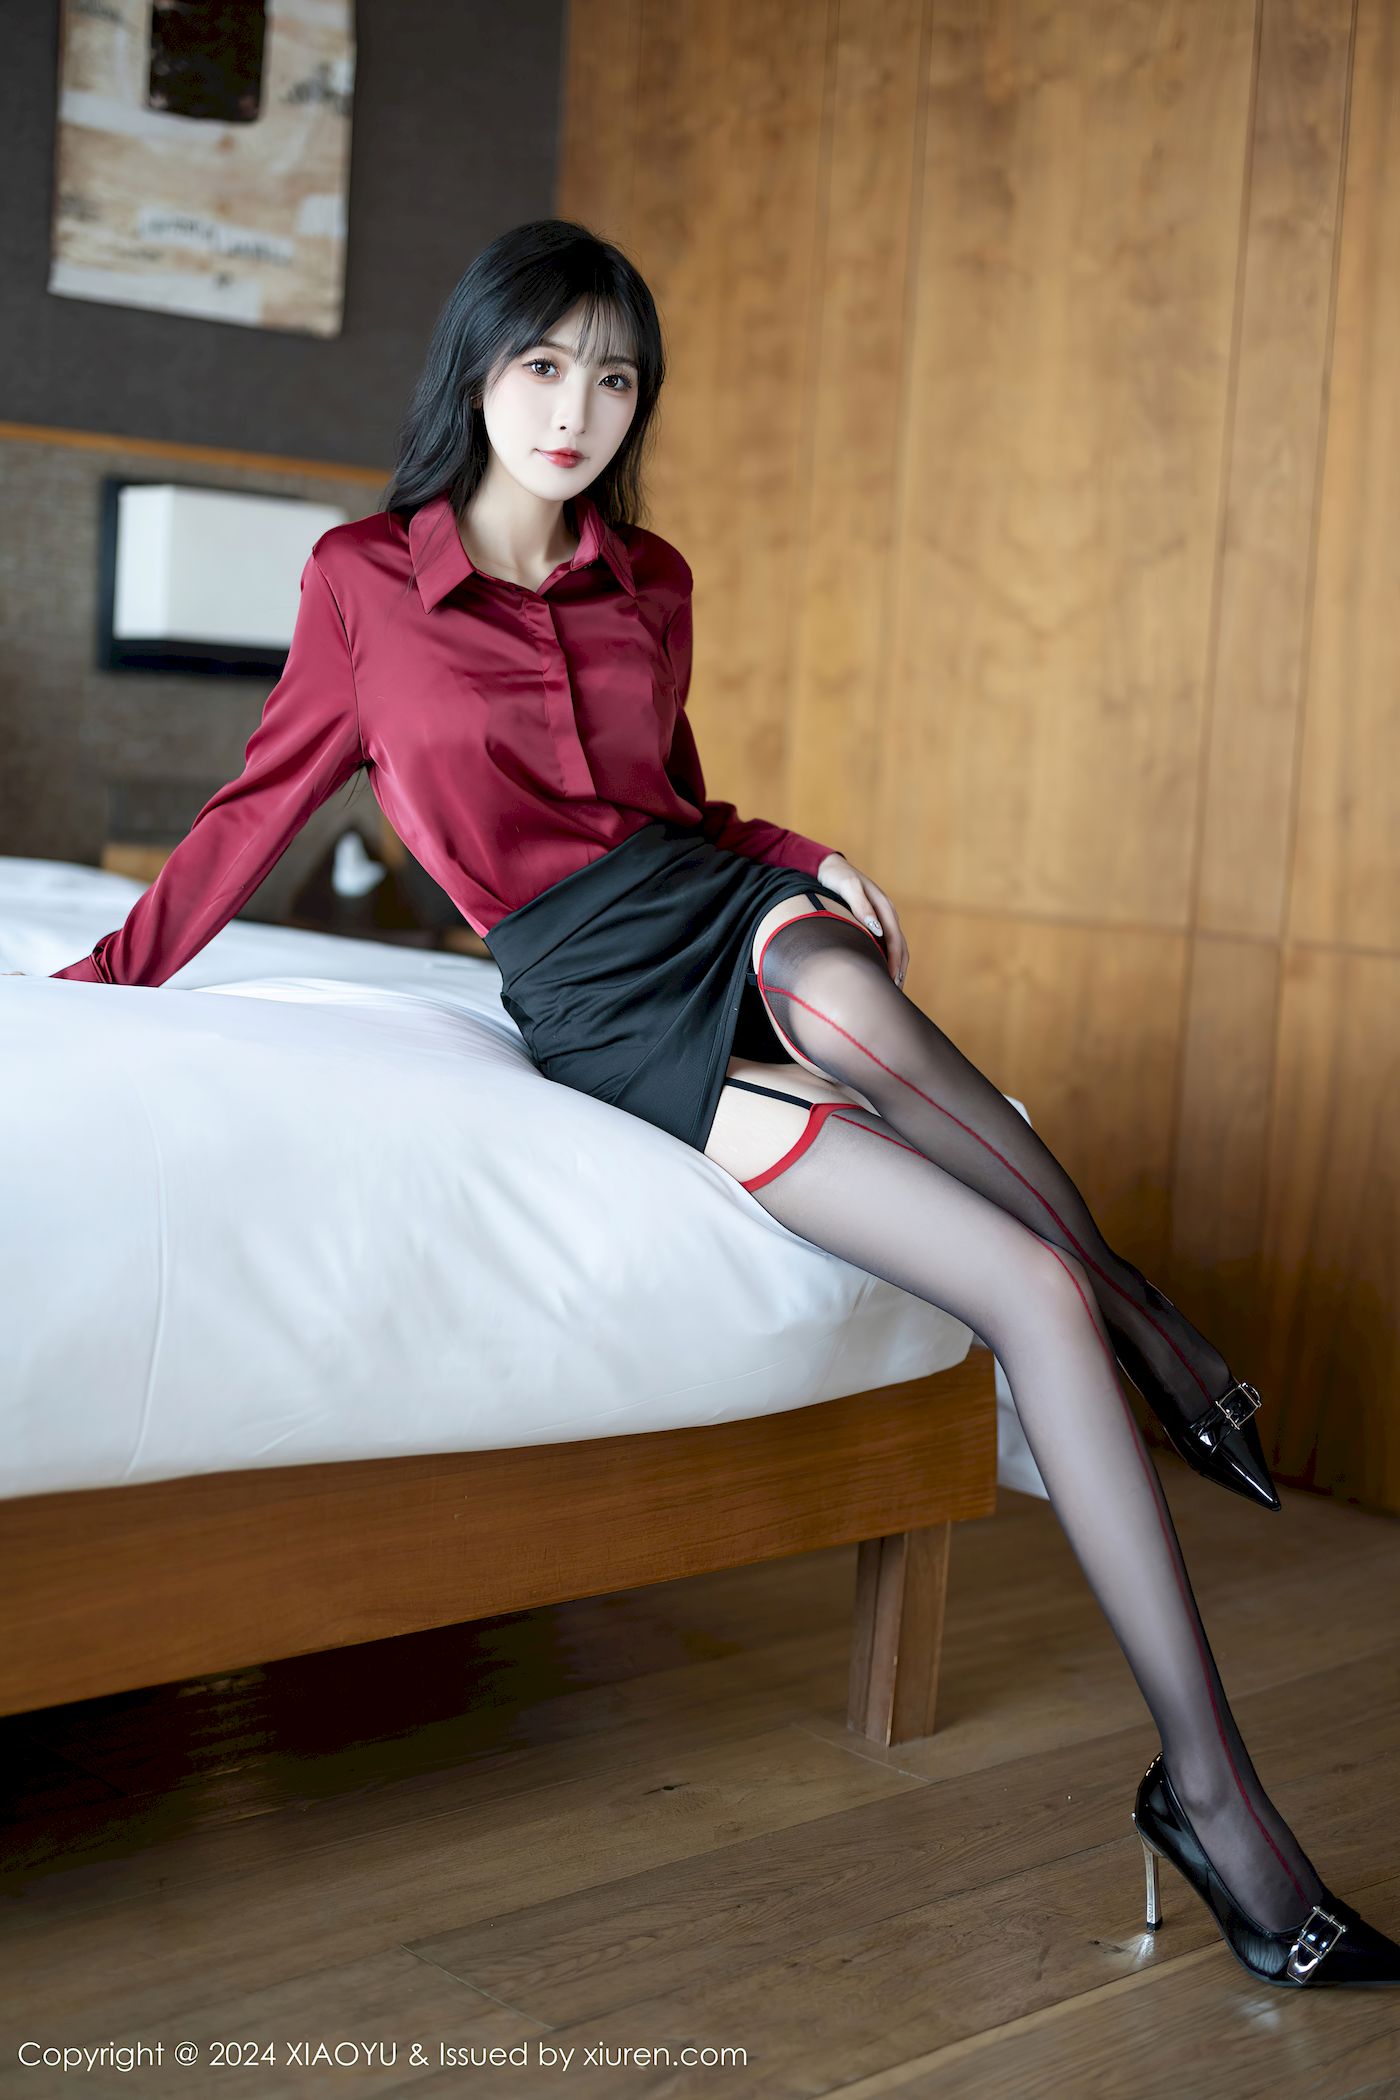 林星阑红色上衣搭配黑色短裙哈尔滨旅拍